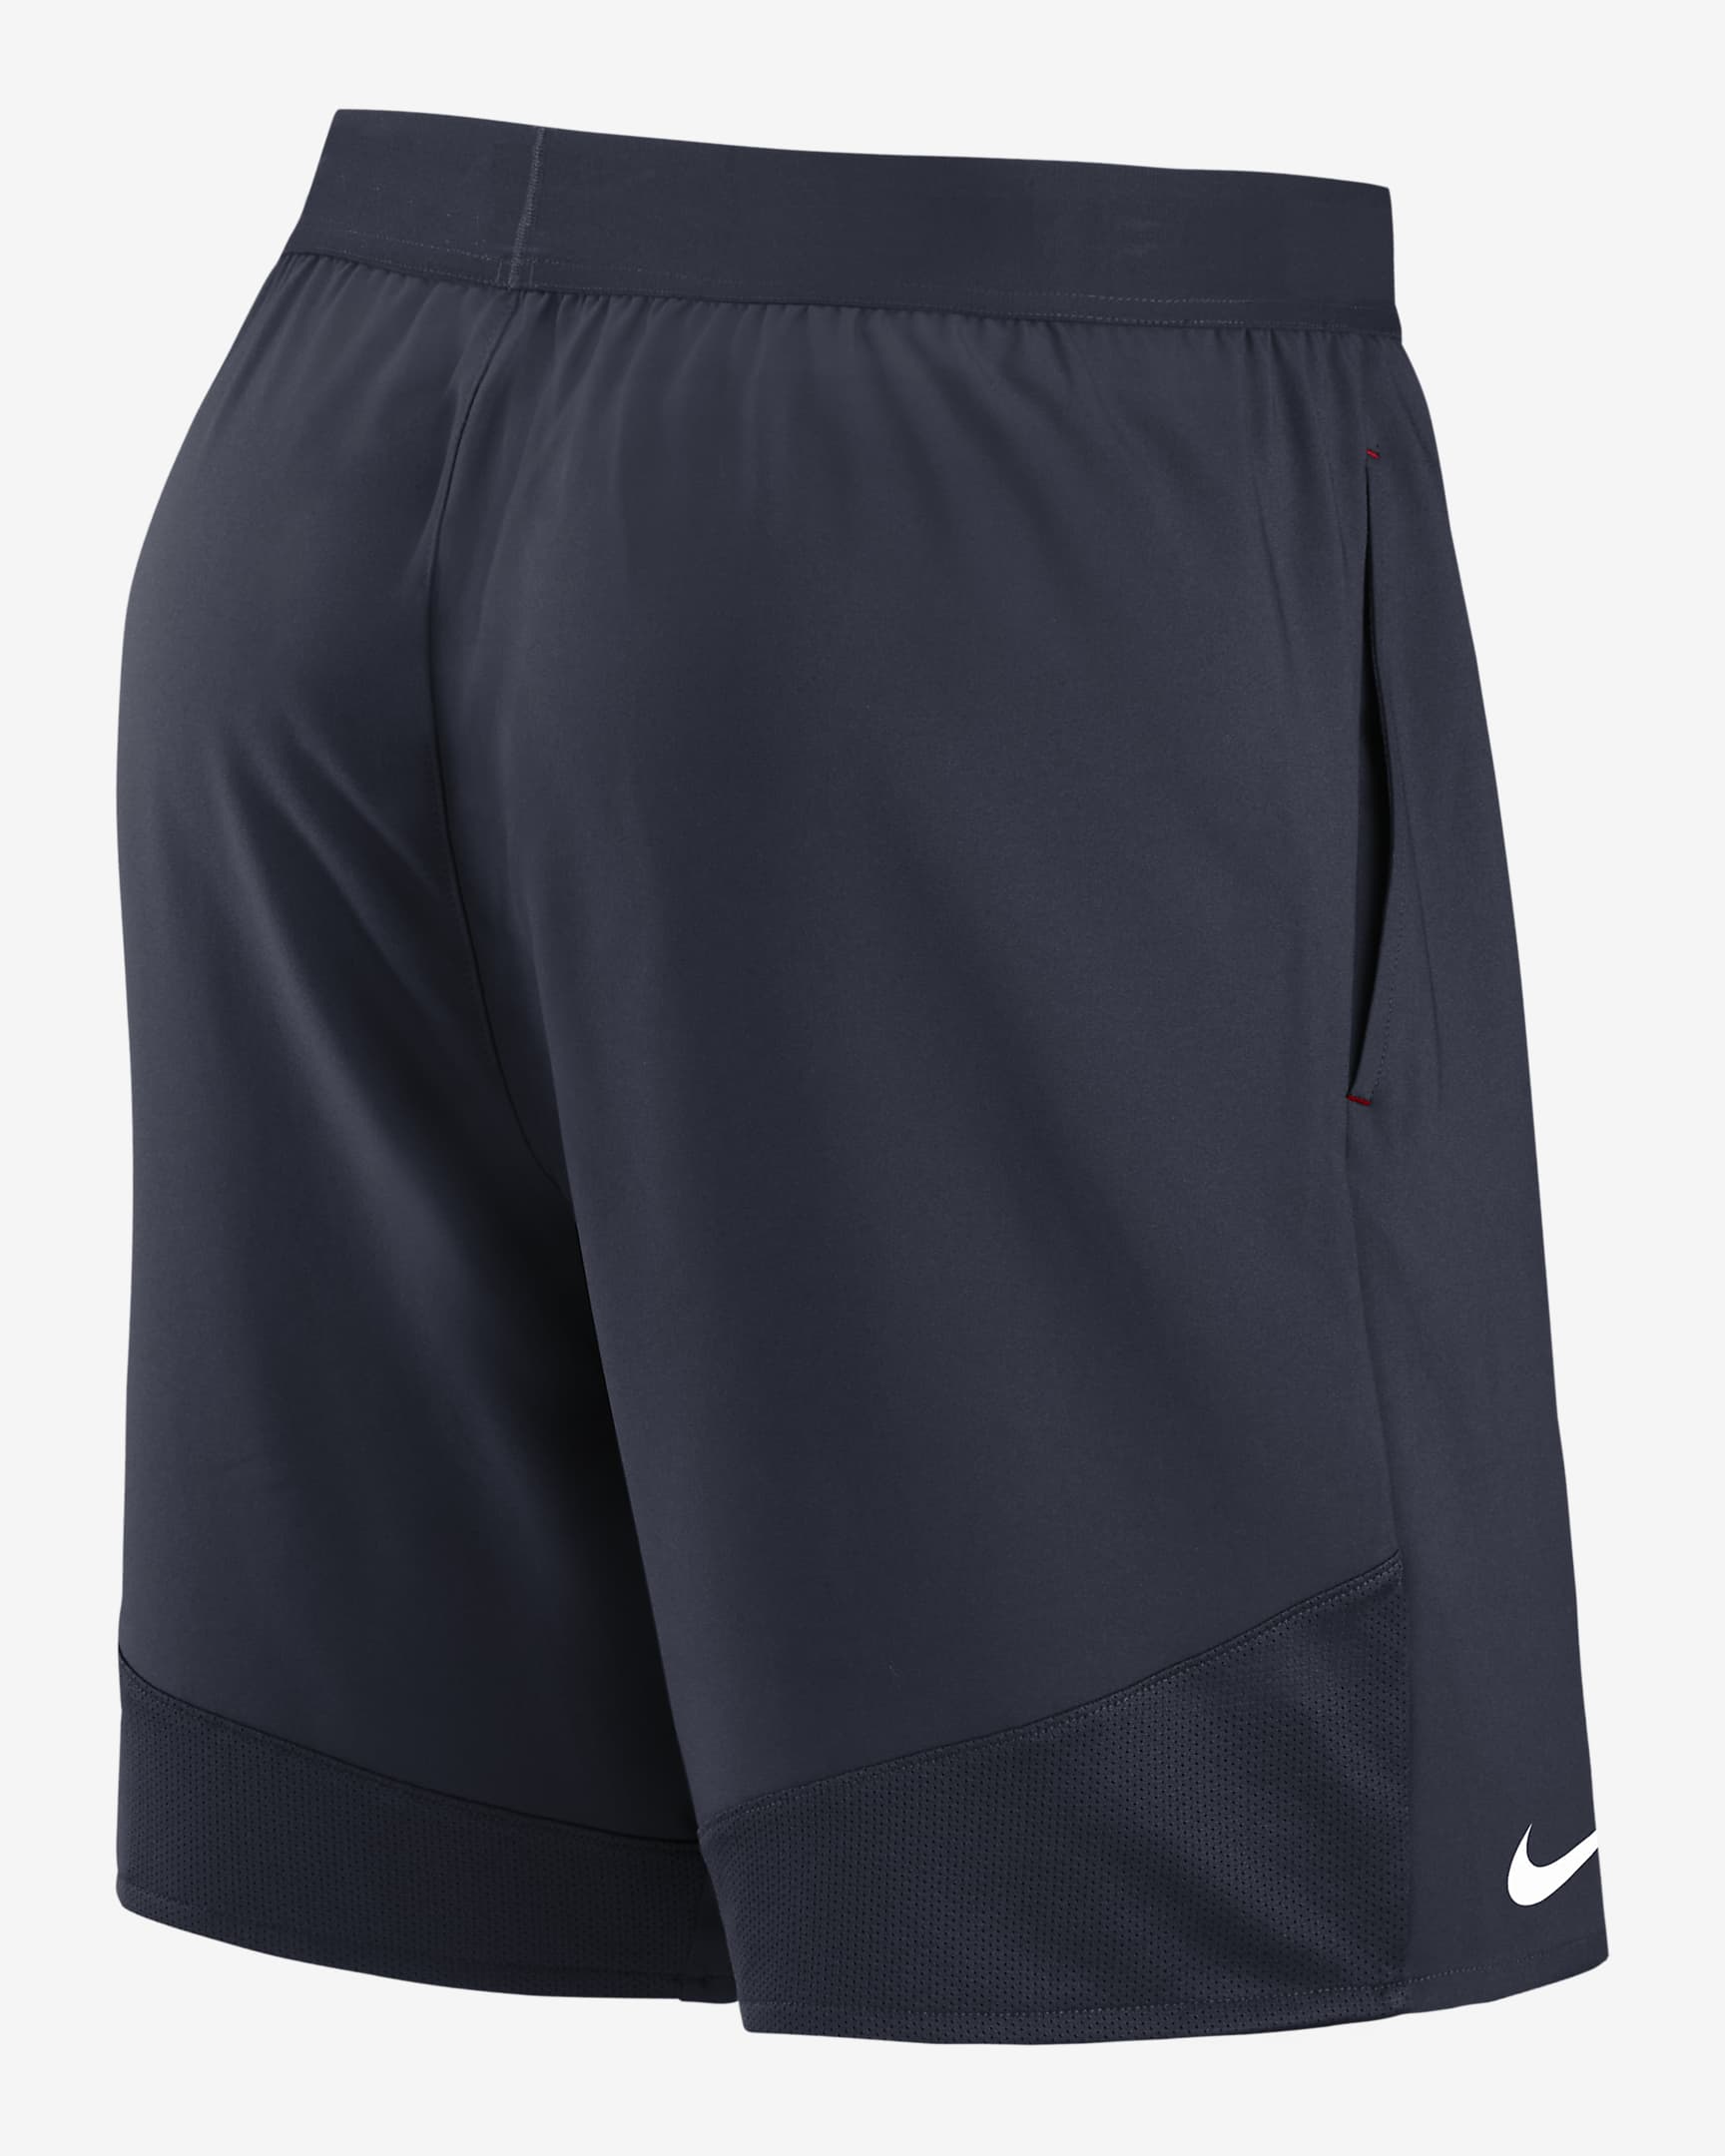 Nike Dri-FIT Stretch (NFL Houston Texans) Men's Shorts. Nike.com